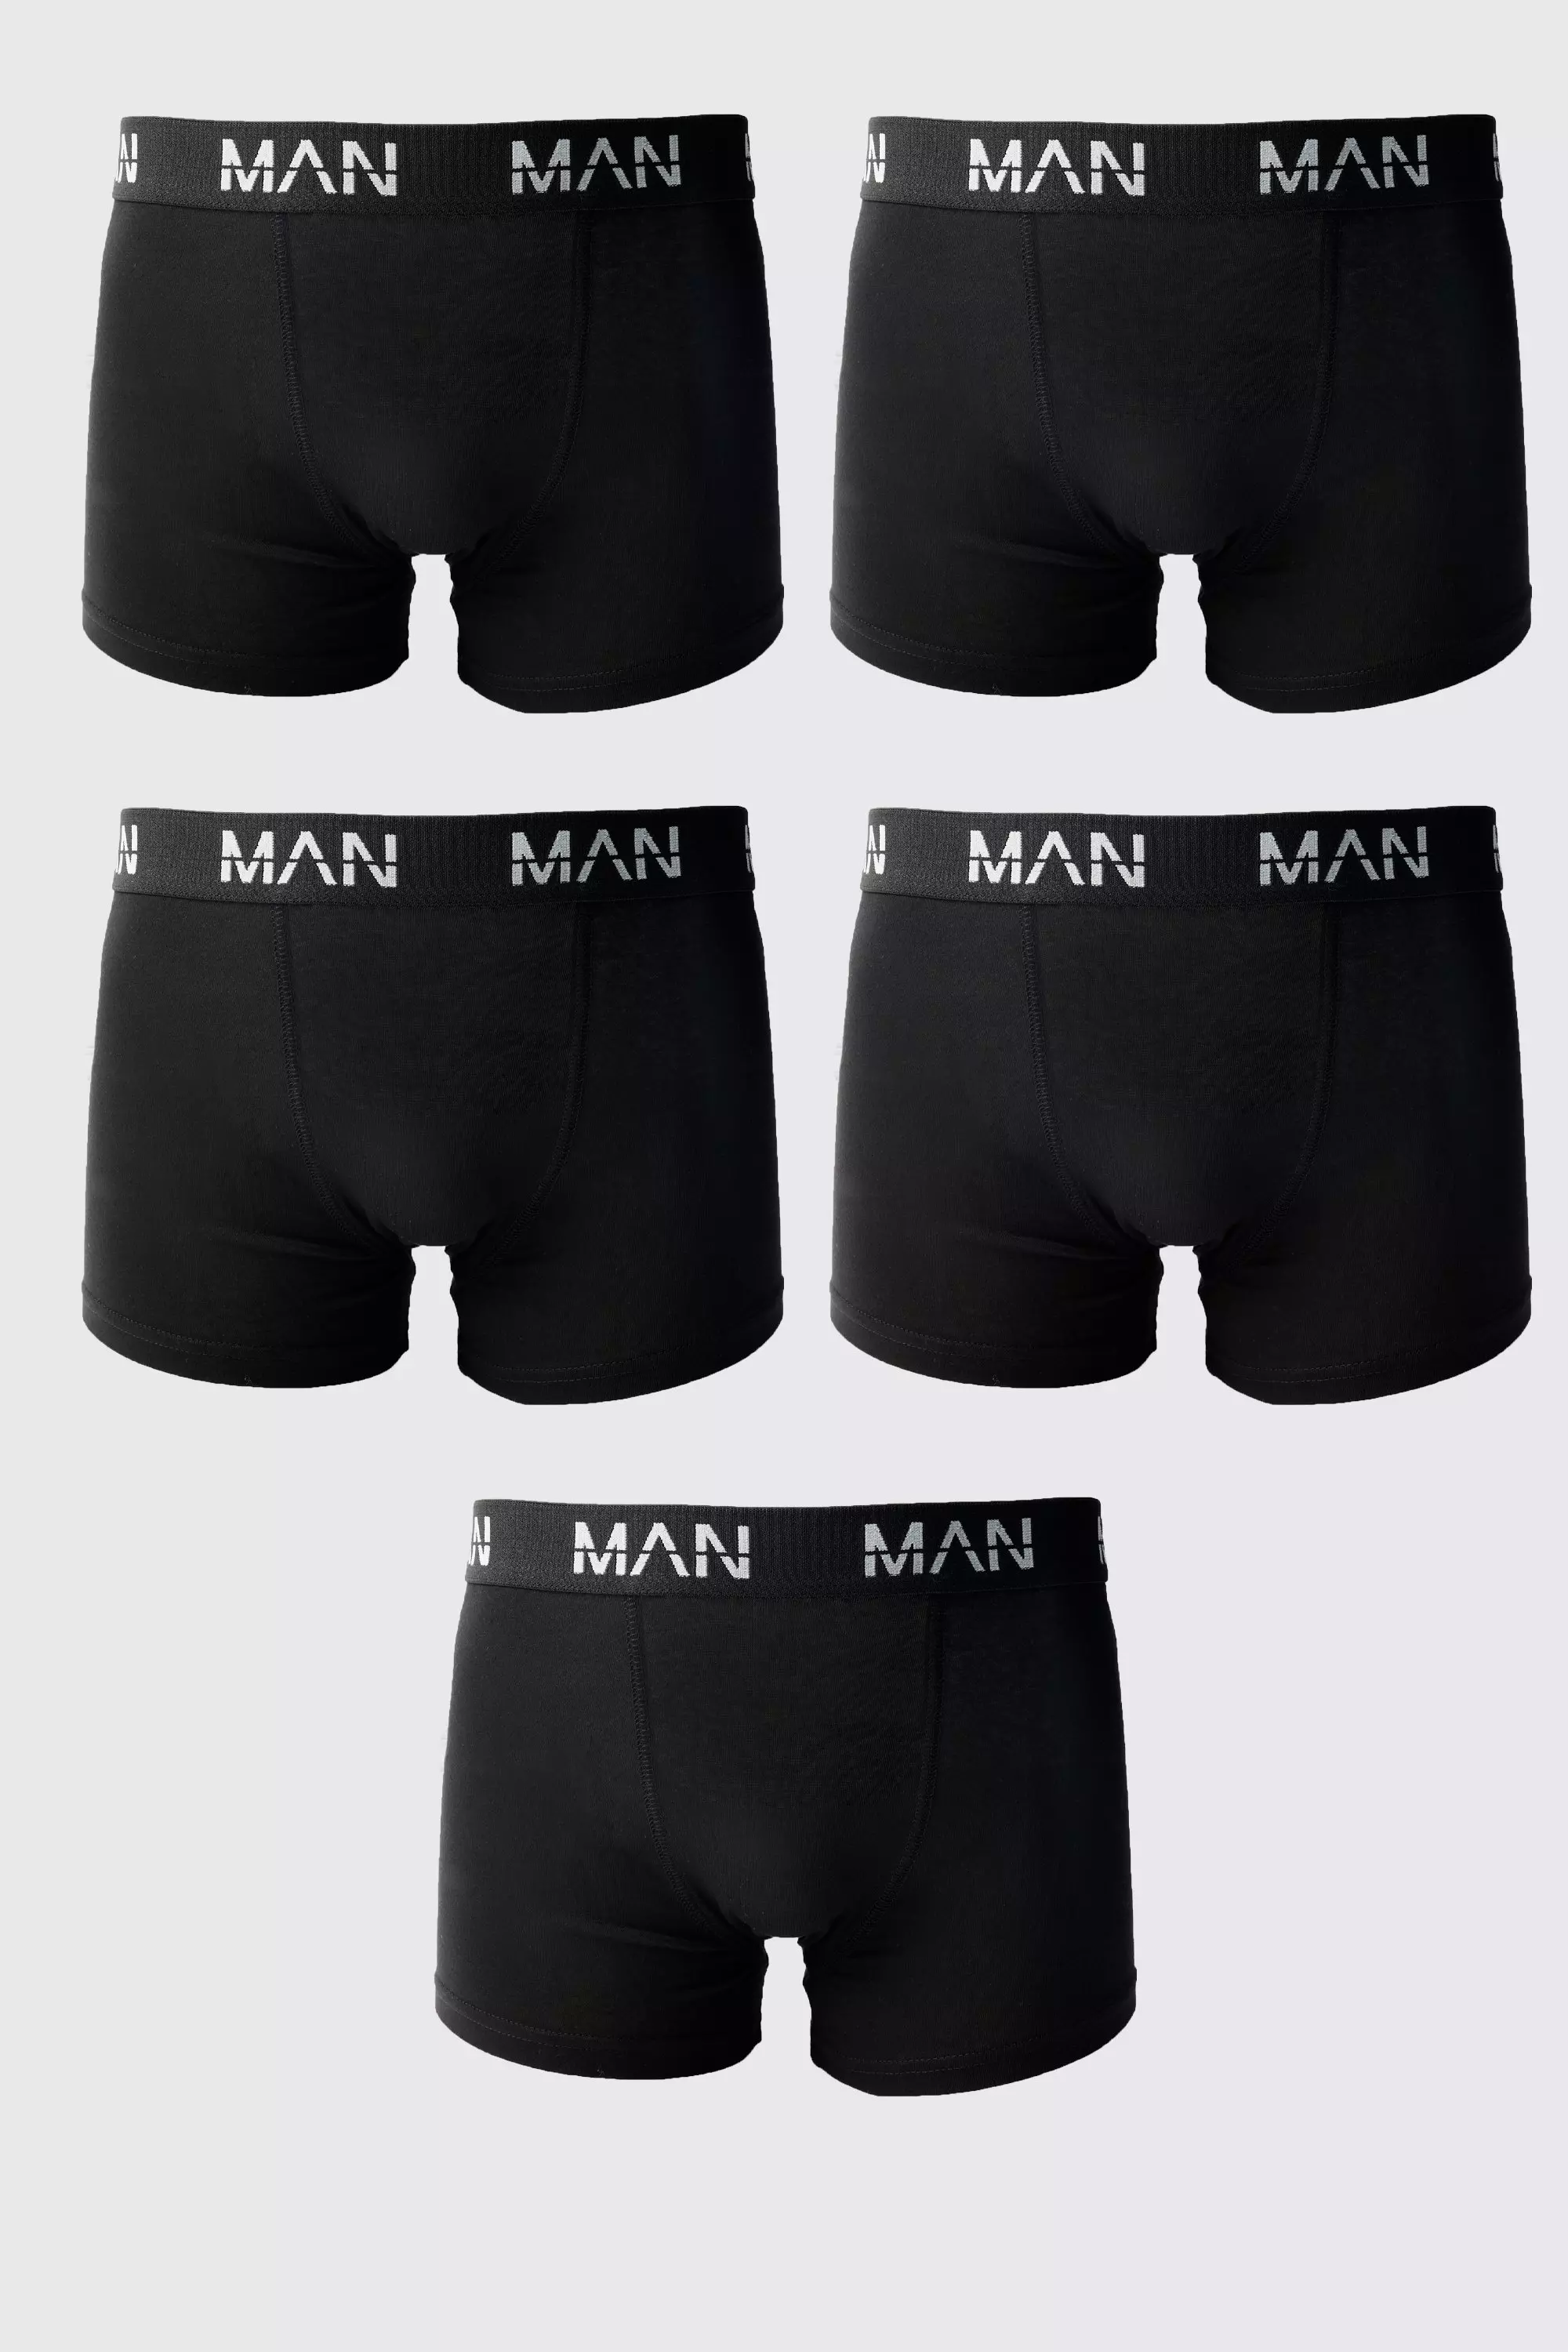 5 Pack Man Trunks Black